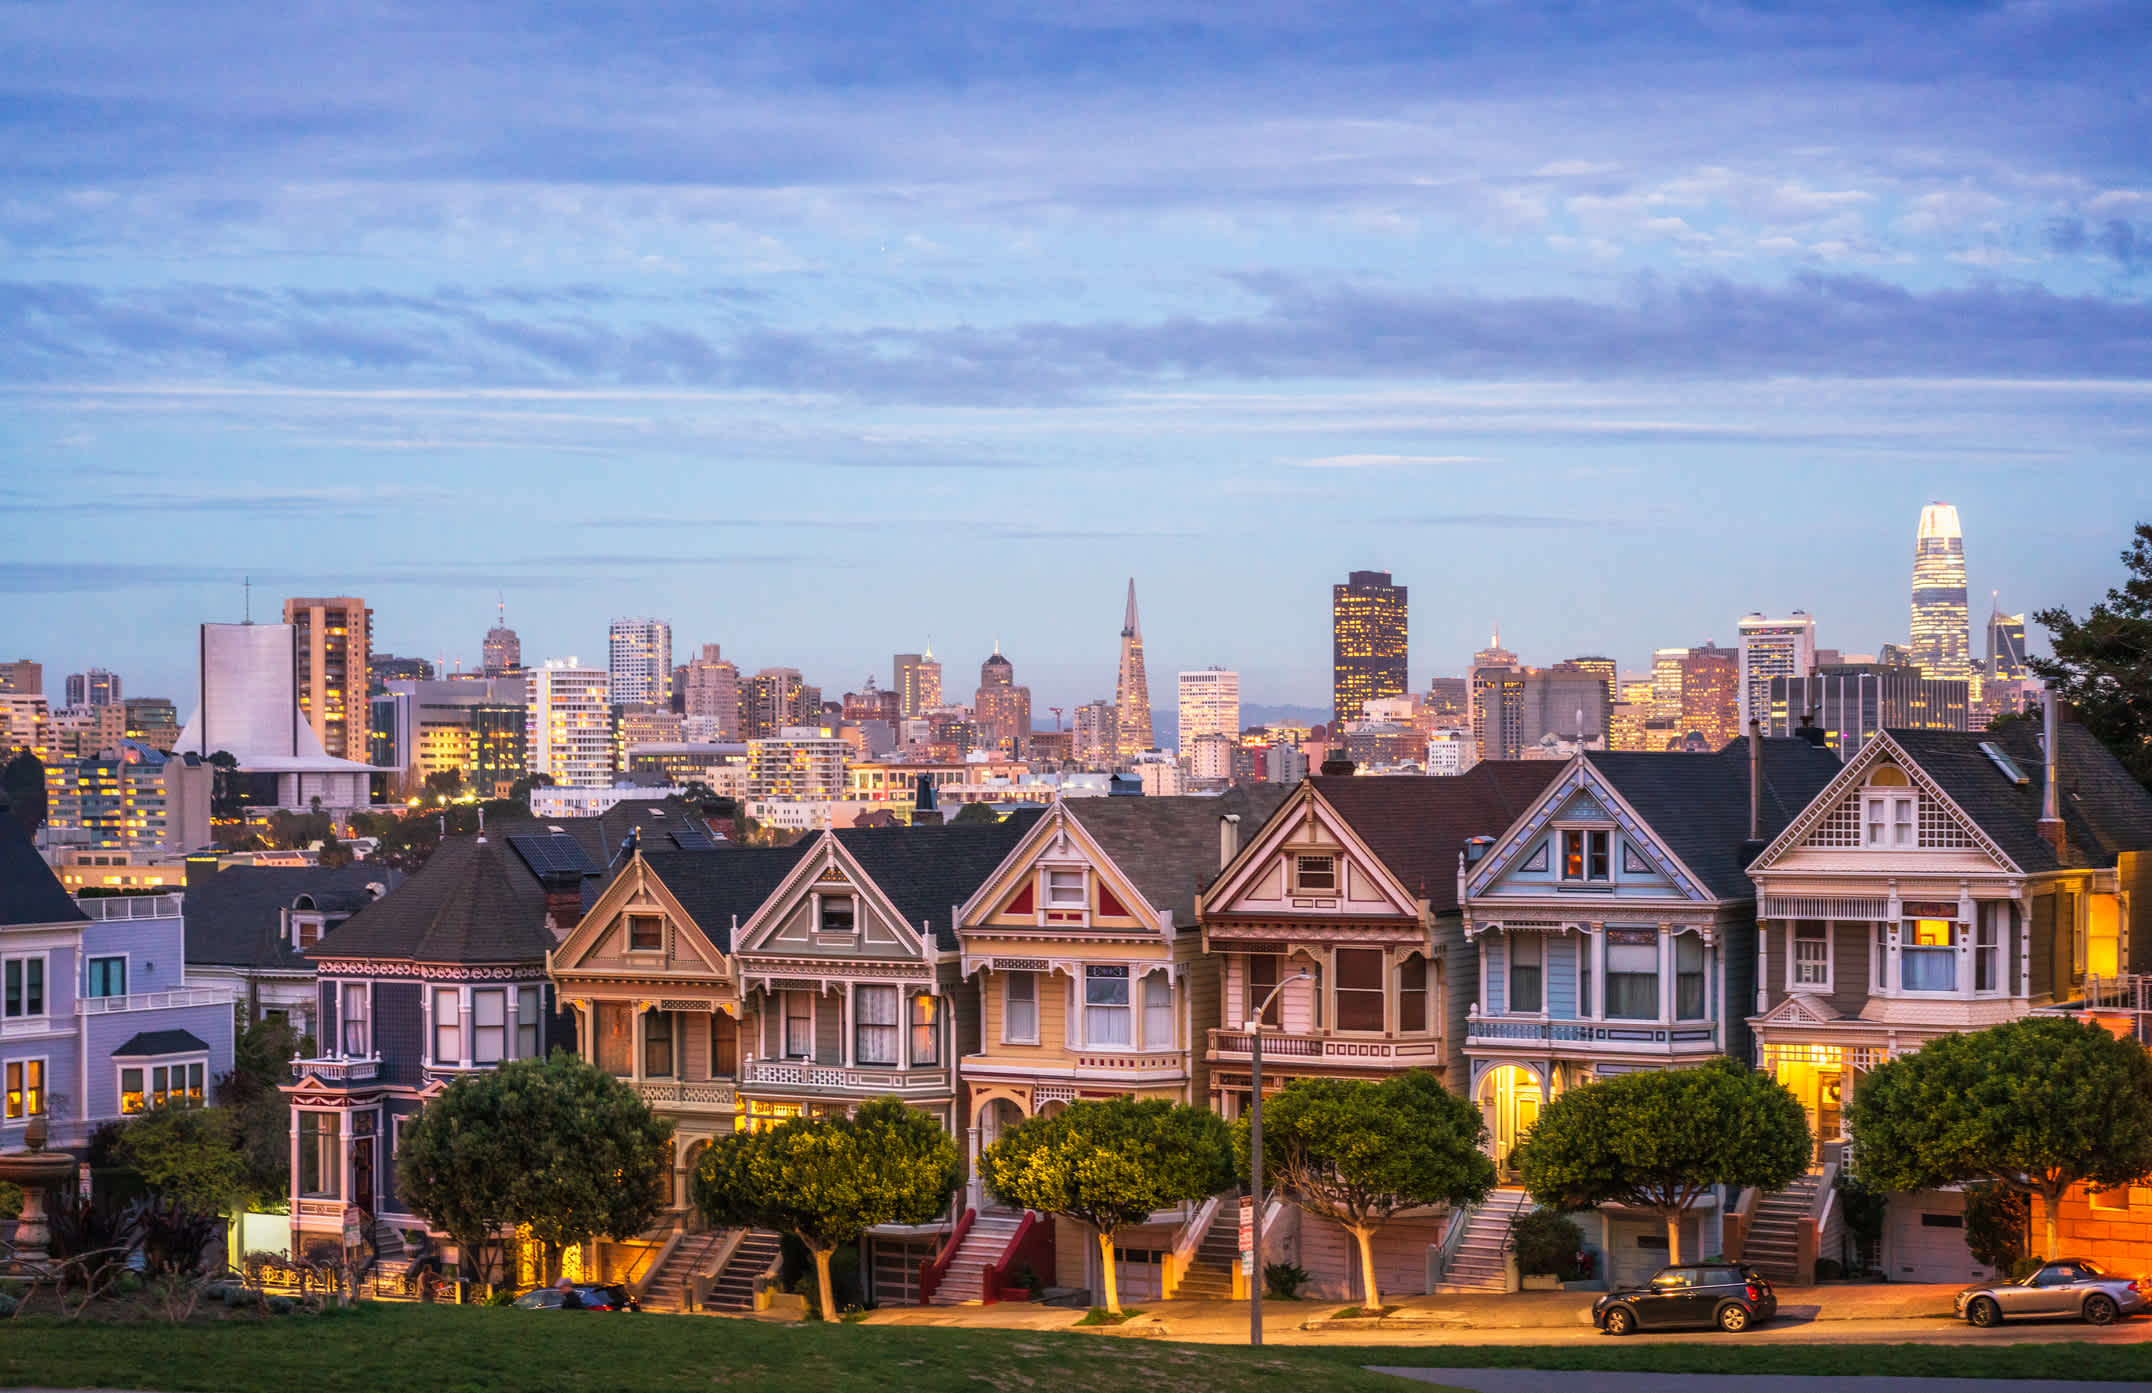 Groupe de maisons Painted Ladies et skyline de San Francisco en arrière-plan, Californie, États-Unis.